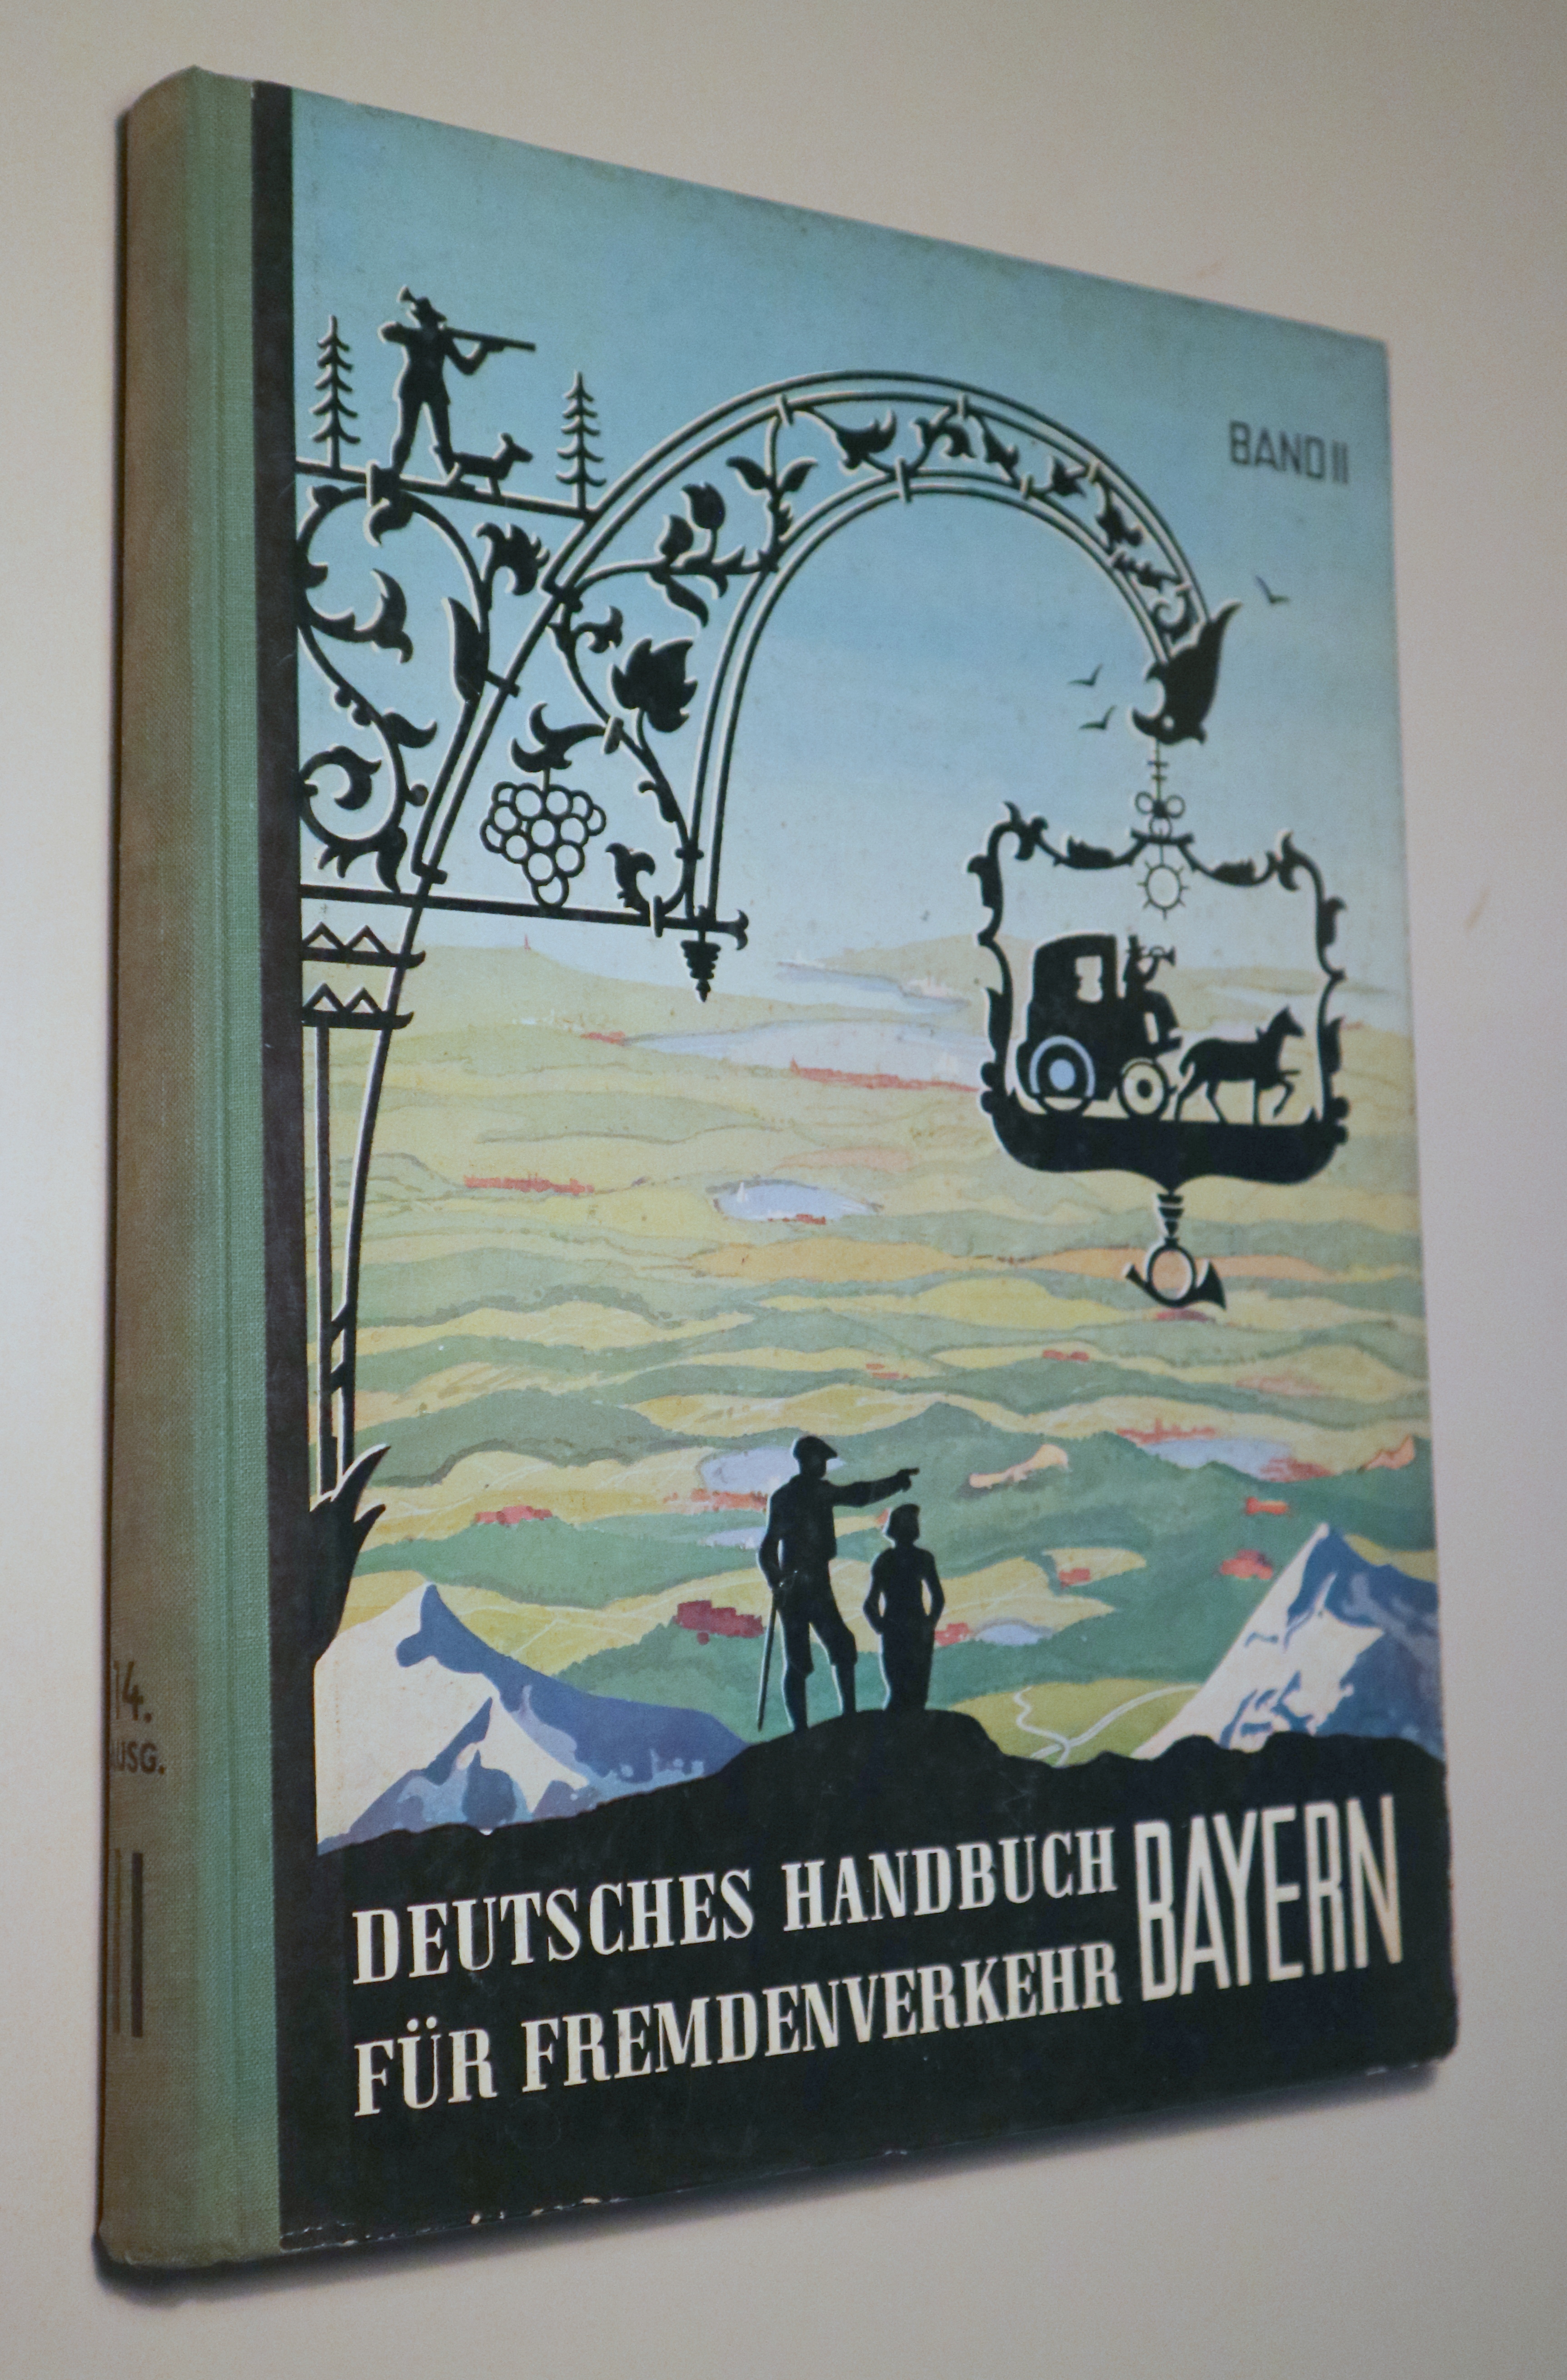 DEUTSCHES HANDBUCH FÜR FREMDENVERKEHR BAYERN Ban II - Berlin 1953 - Muy ilustrado